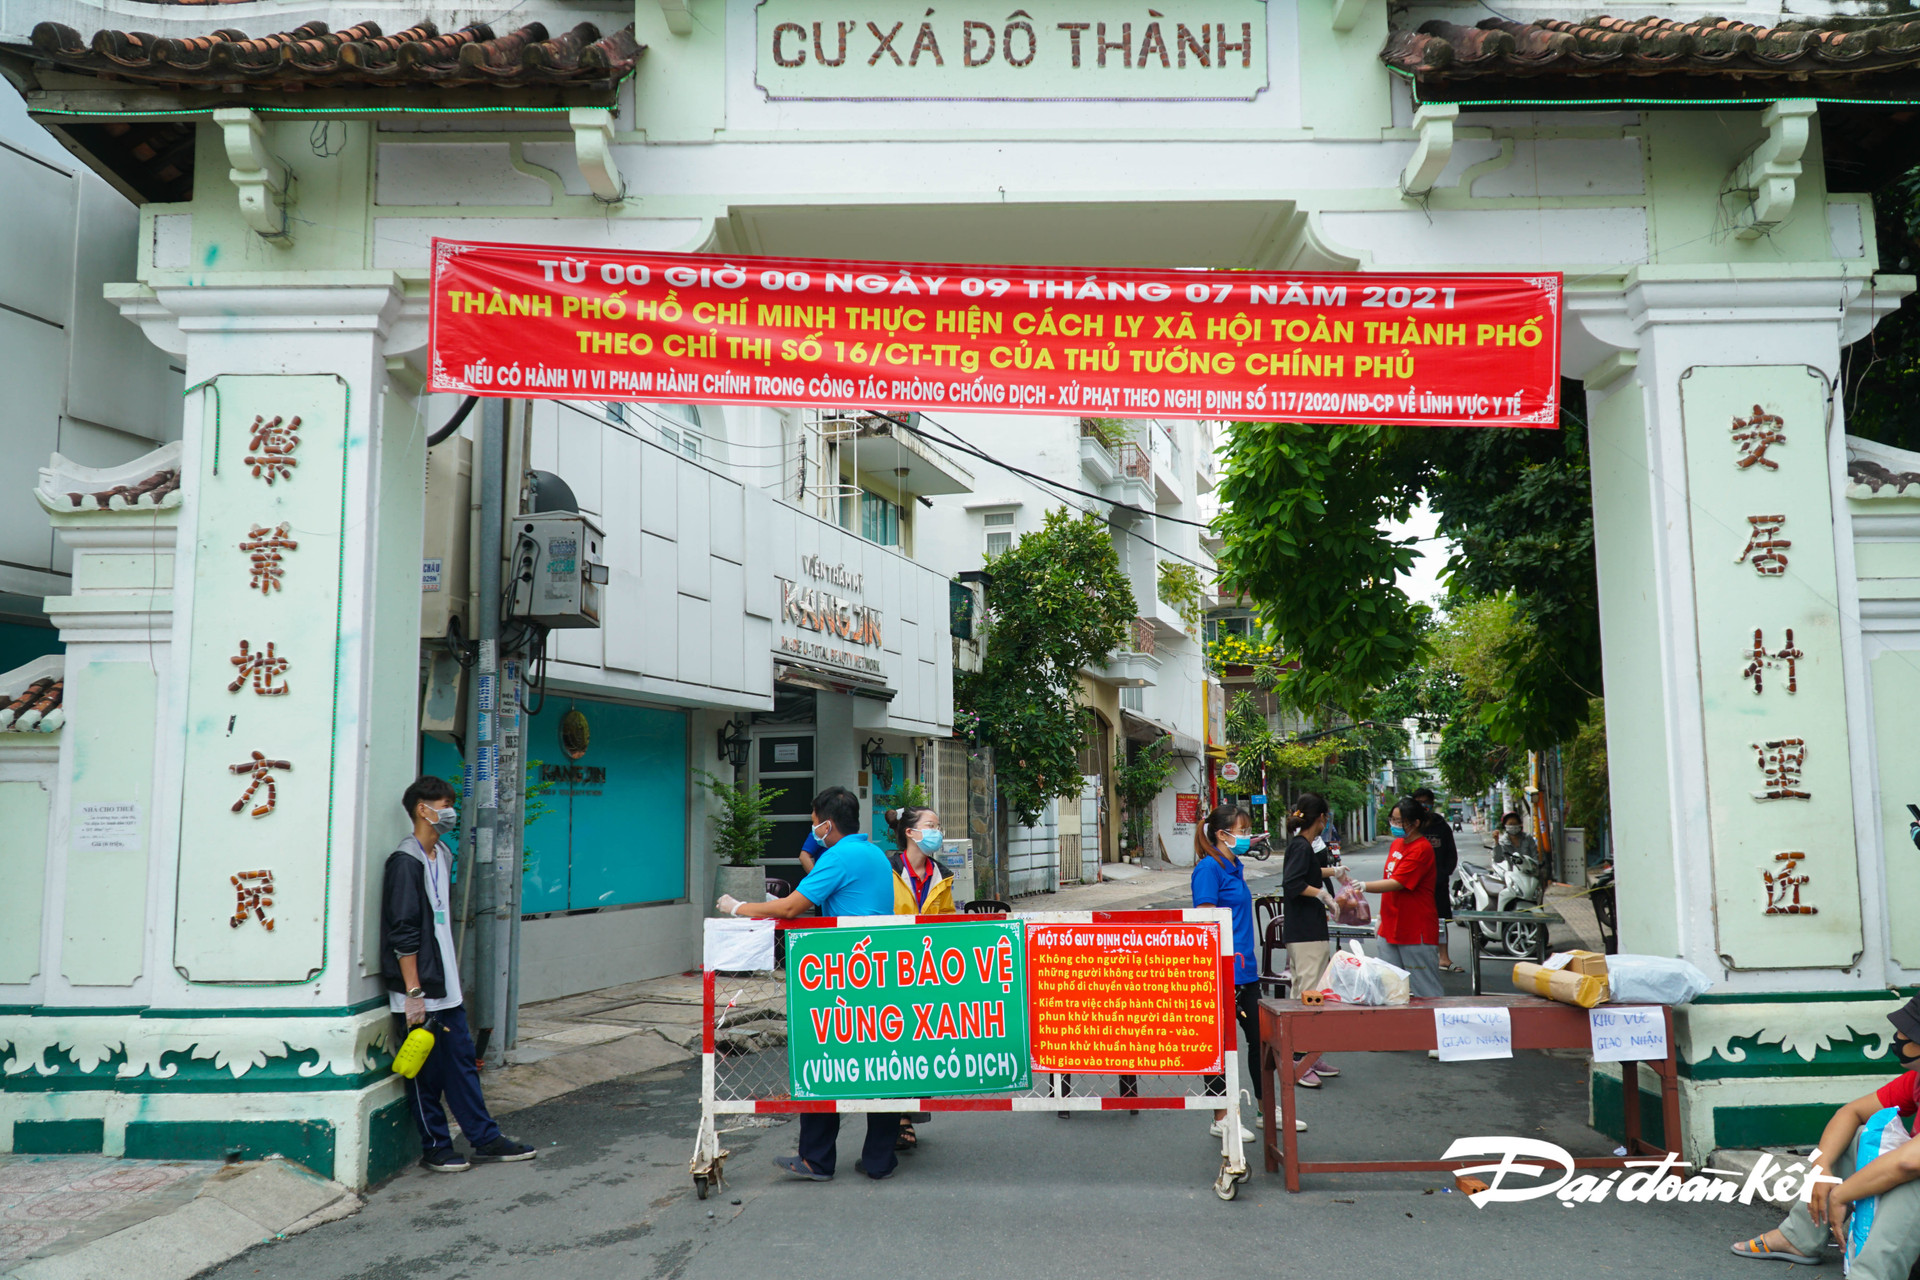 “Chốt bảo vệ vùng xanh” tại cổng vào Cư xã Đô Thành, trên đường Điện Biên Phủ tập trung đông lực lượng hỗ trợ hơn.